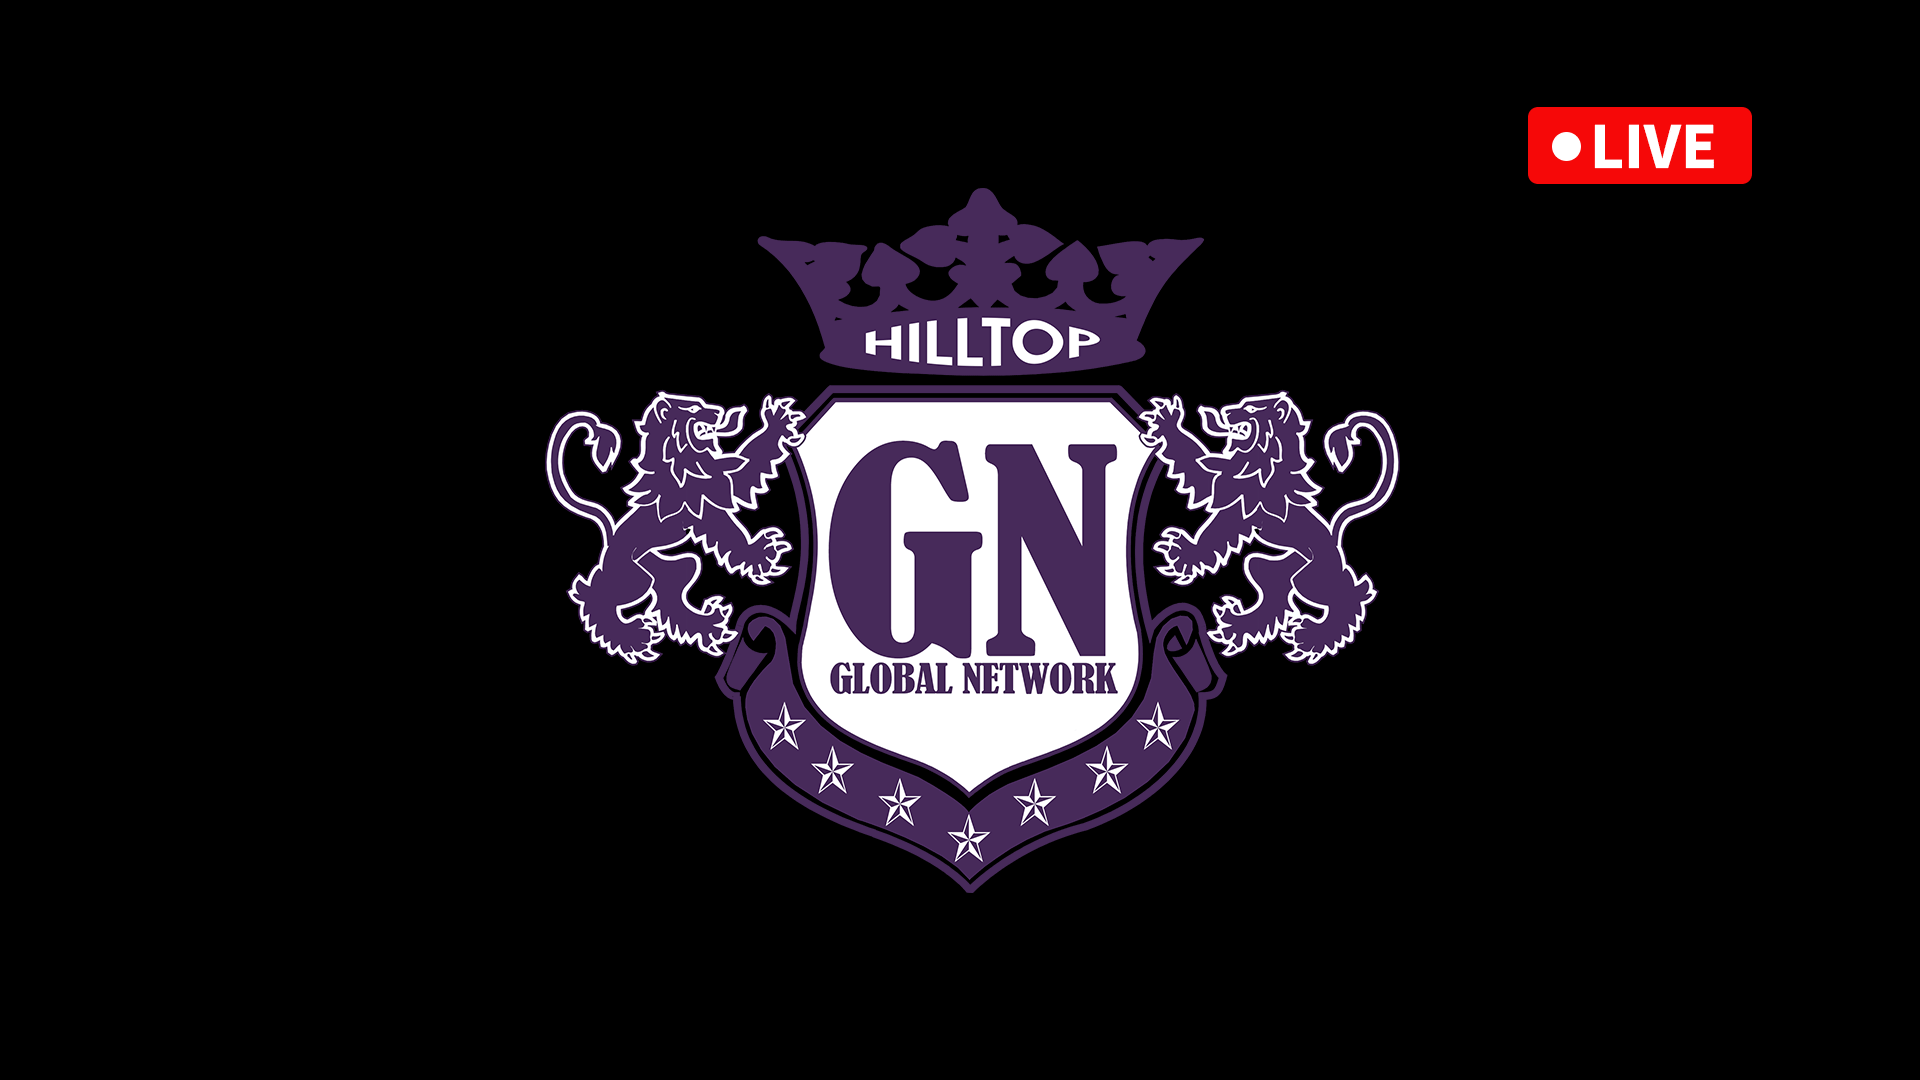 Hilltop Global Network